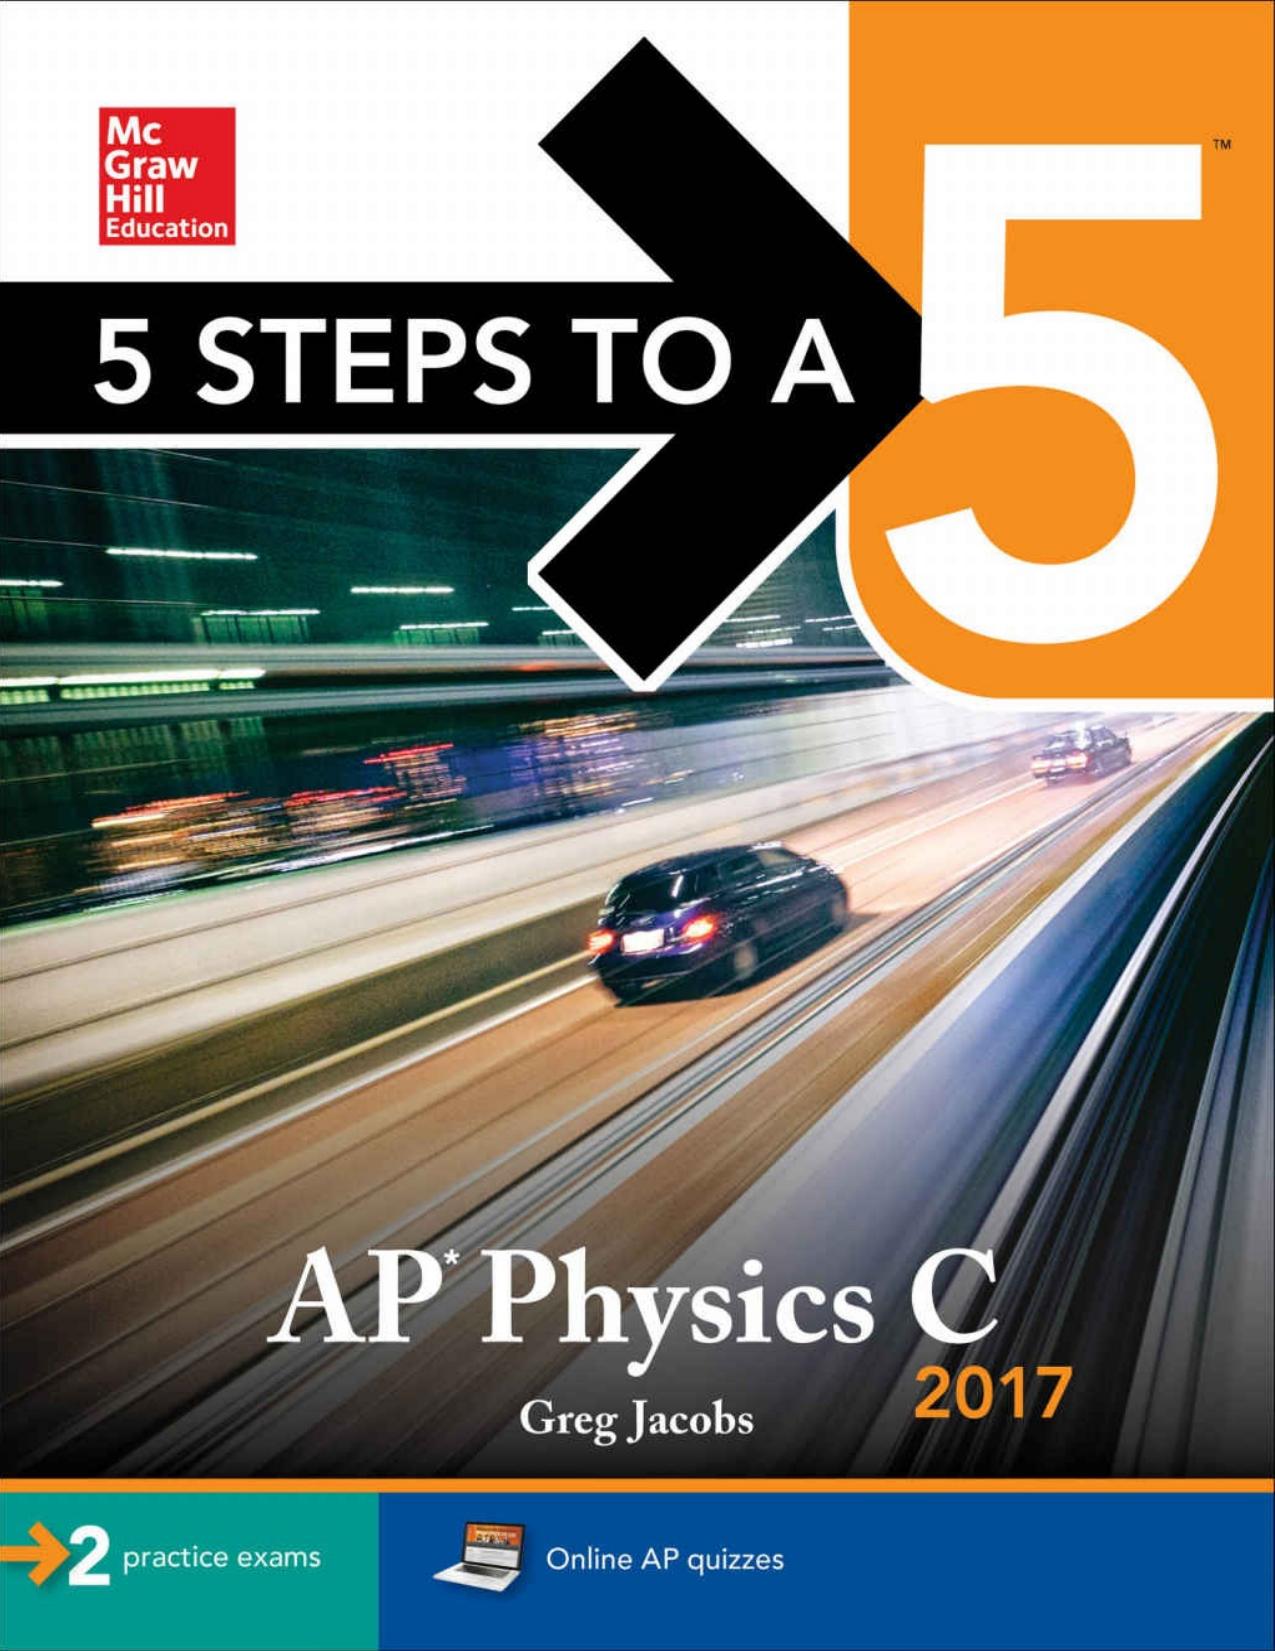 5 Steps to a 5 AP Physics C 2017.jpg